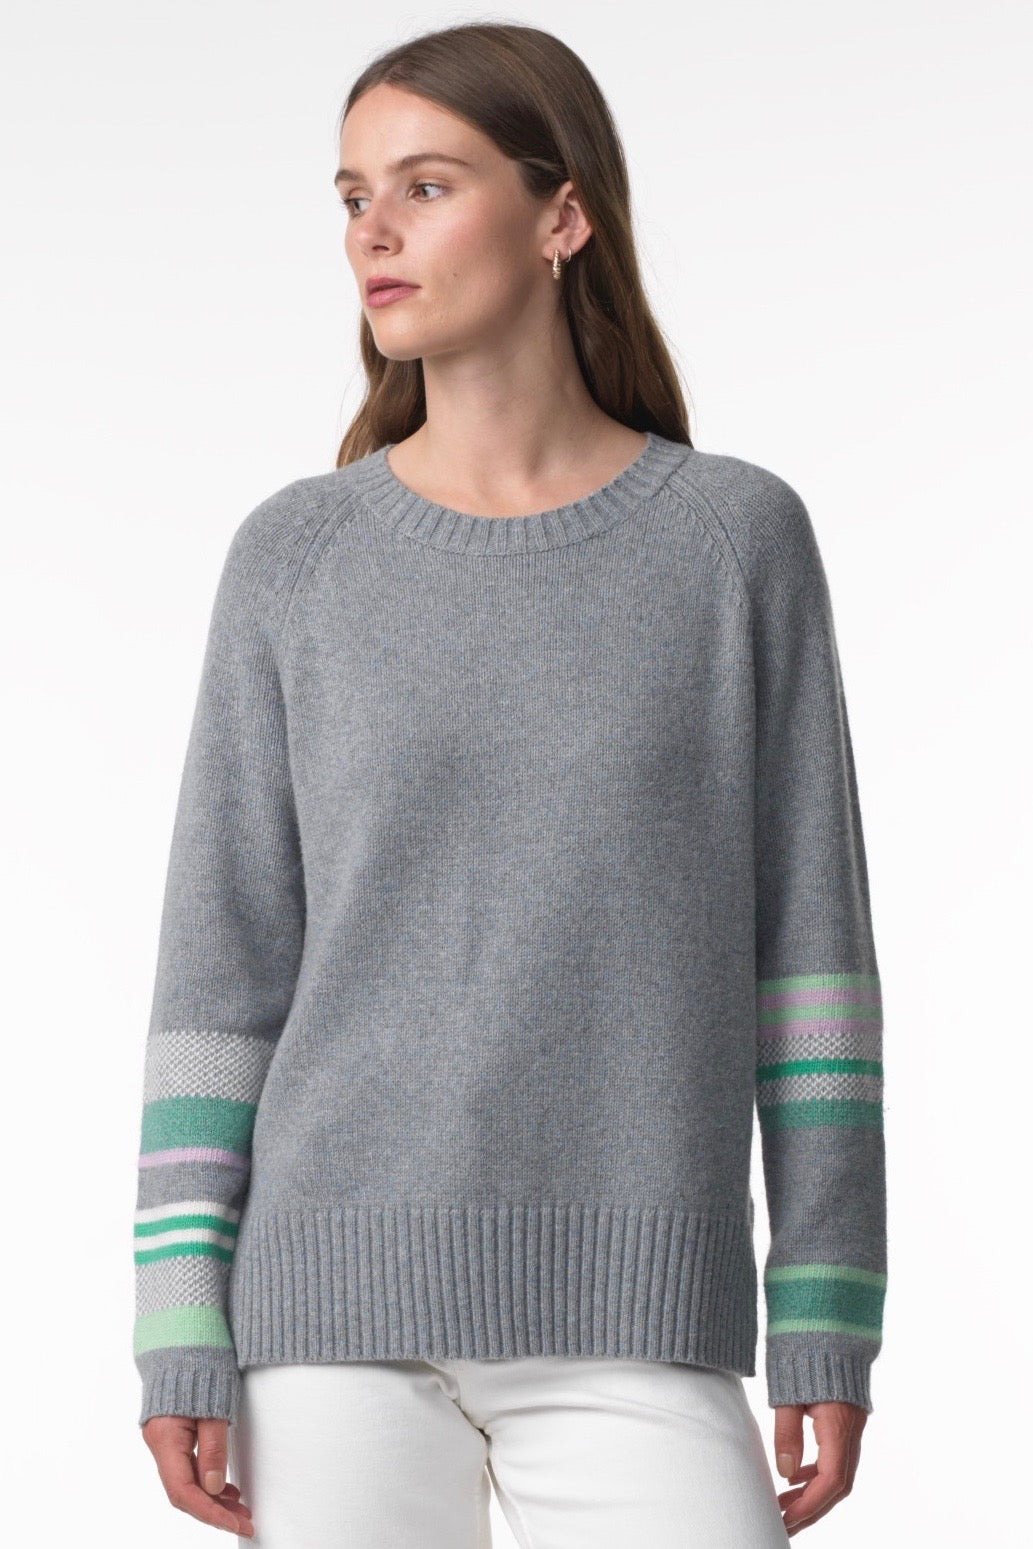 Birdseye Sleeve Sweater